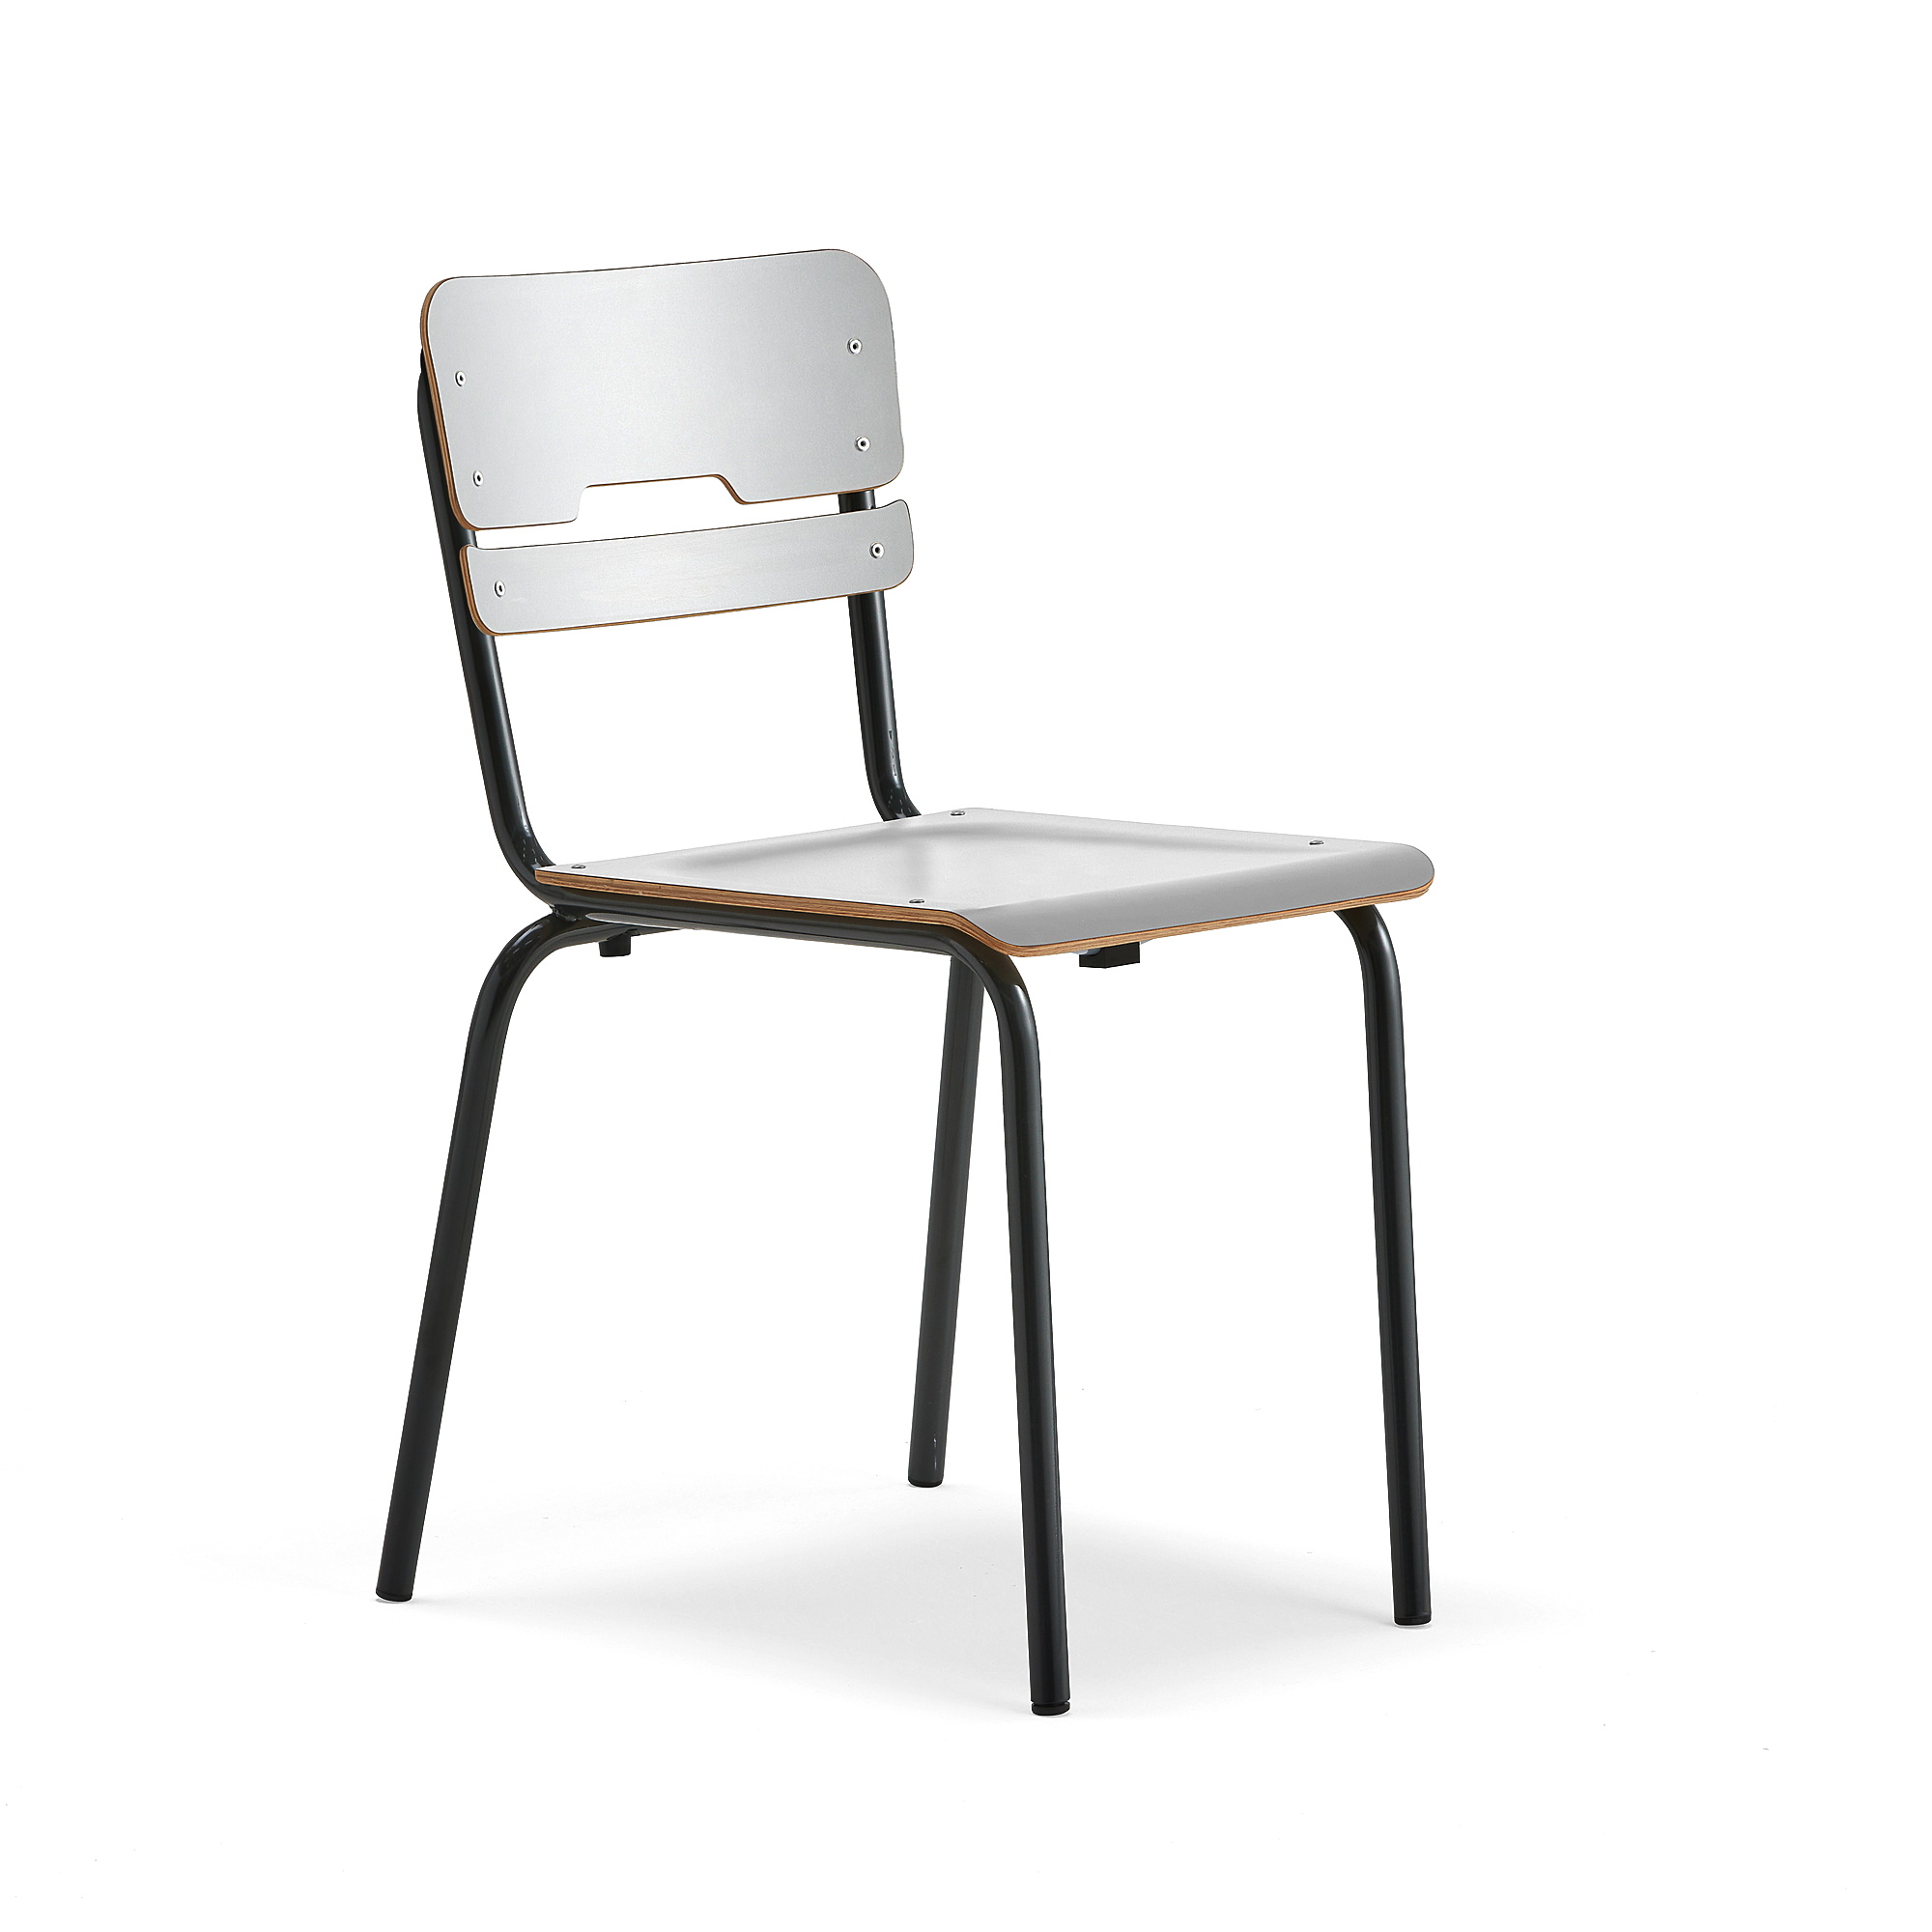 E-shop Školská stolička SCIENTIA, široké sedadlo, V 460 mm, antracit/šedá